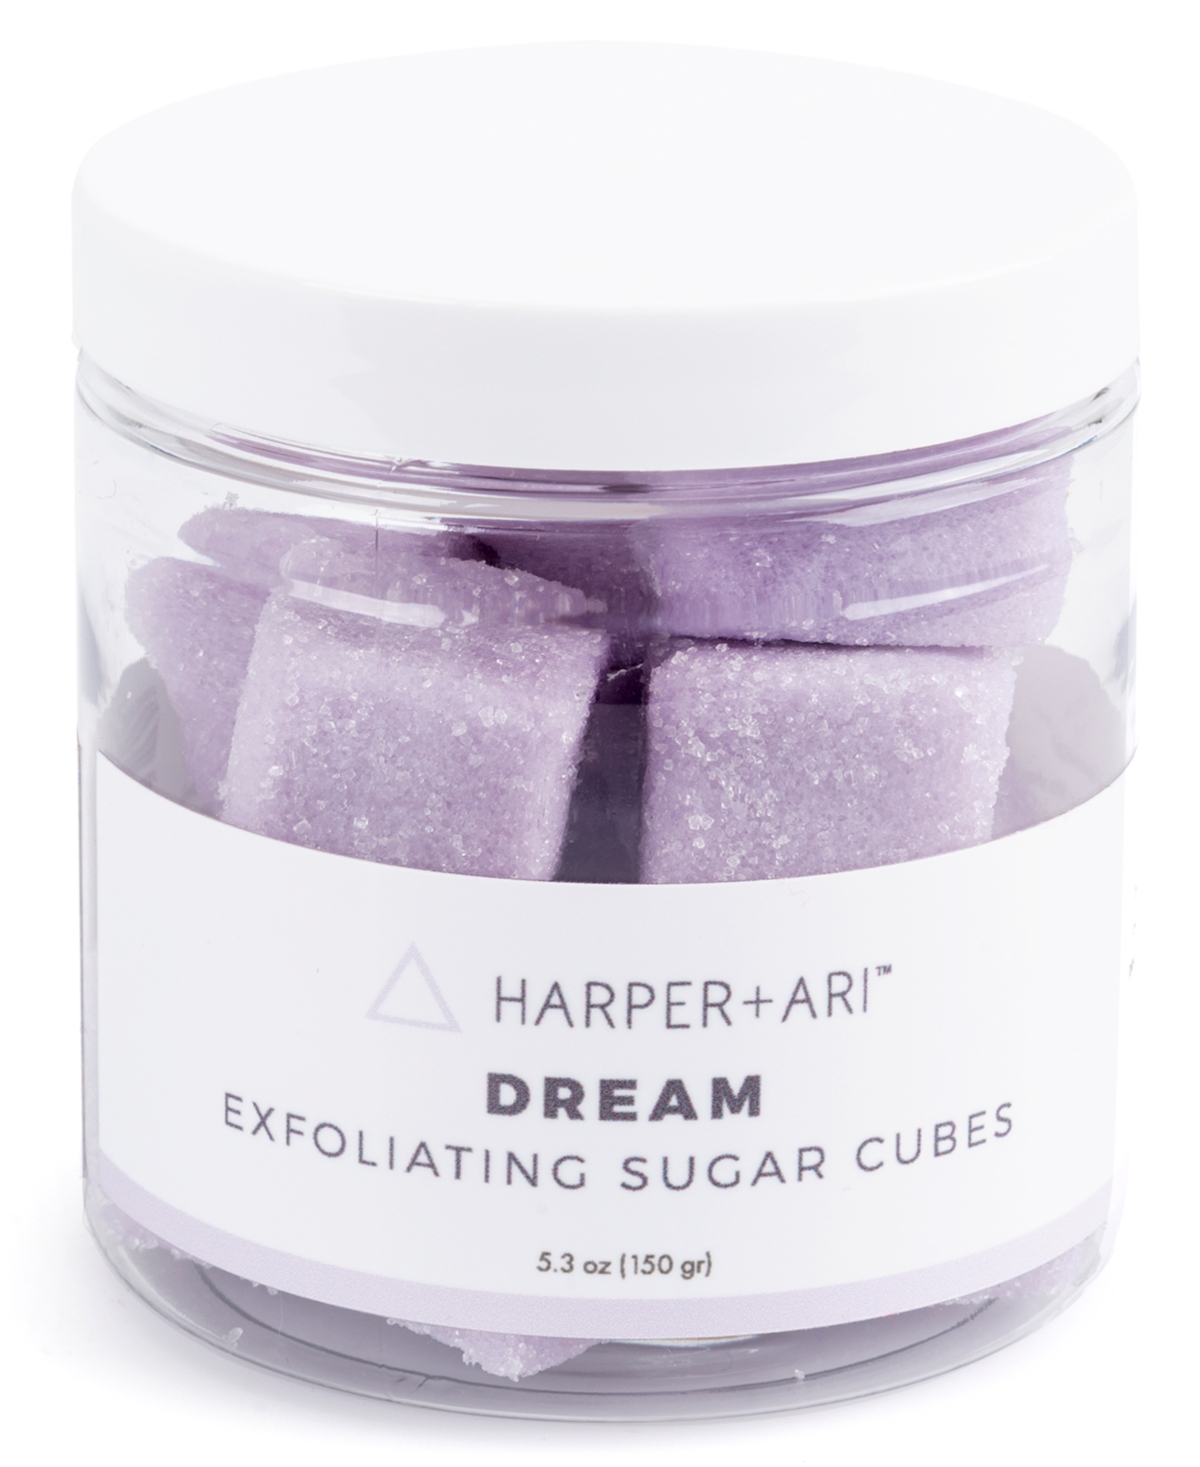 Harper + Ari Dream Exfoliating Sugar Cubes, 5.3-oz.